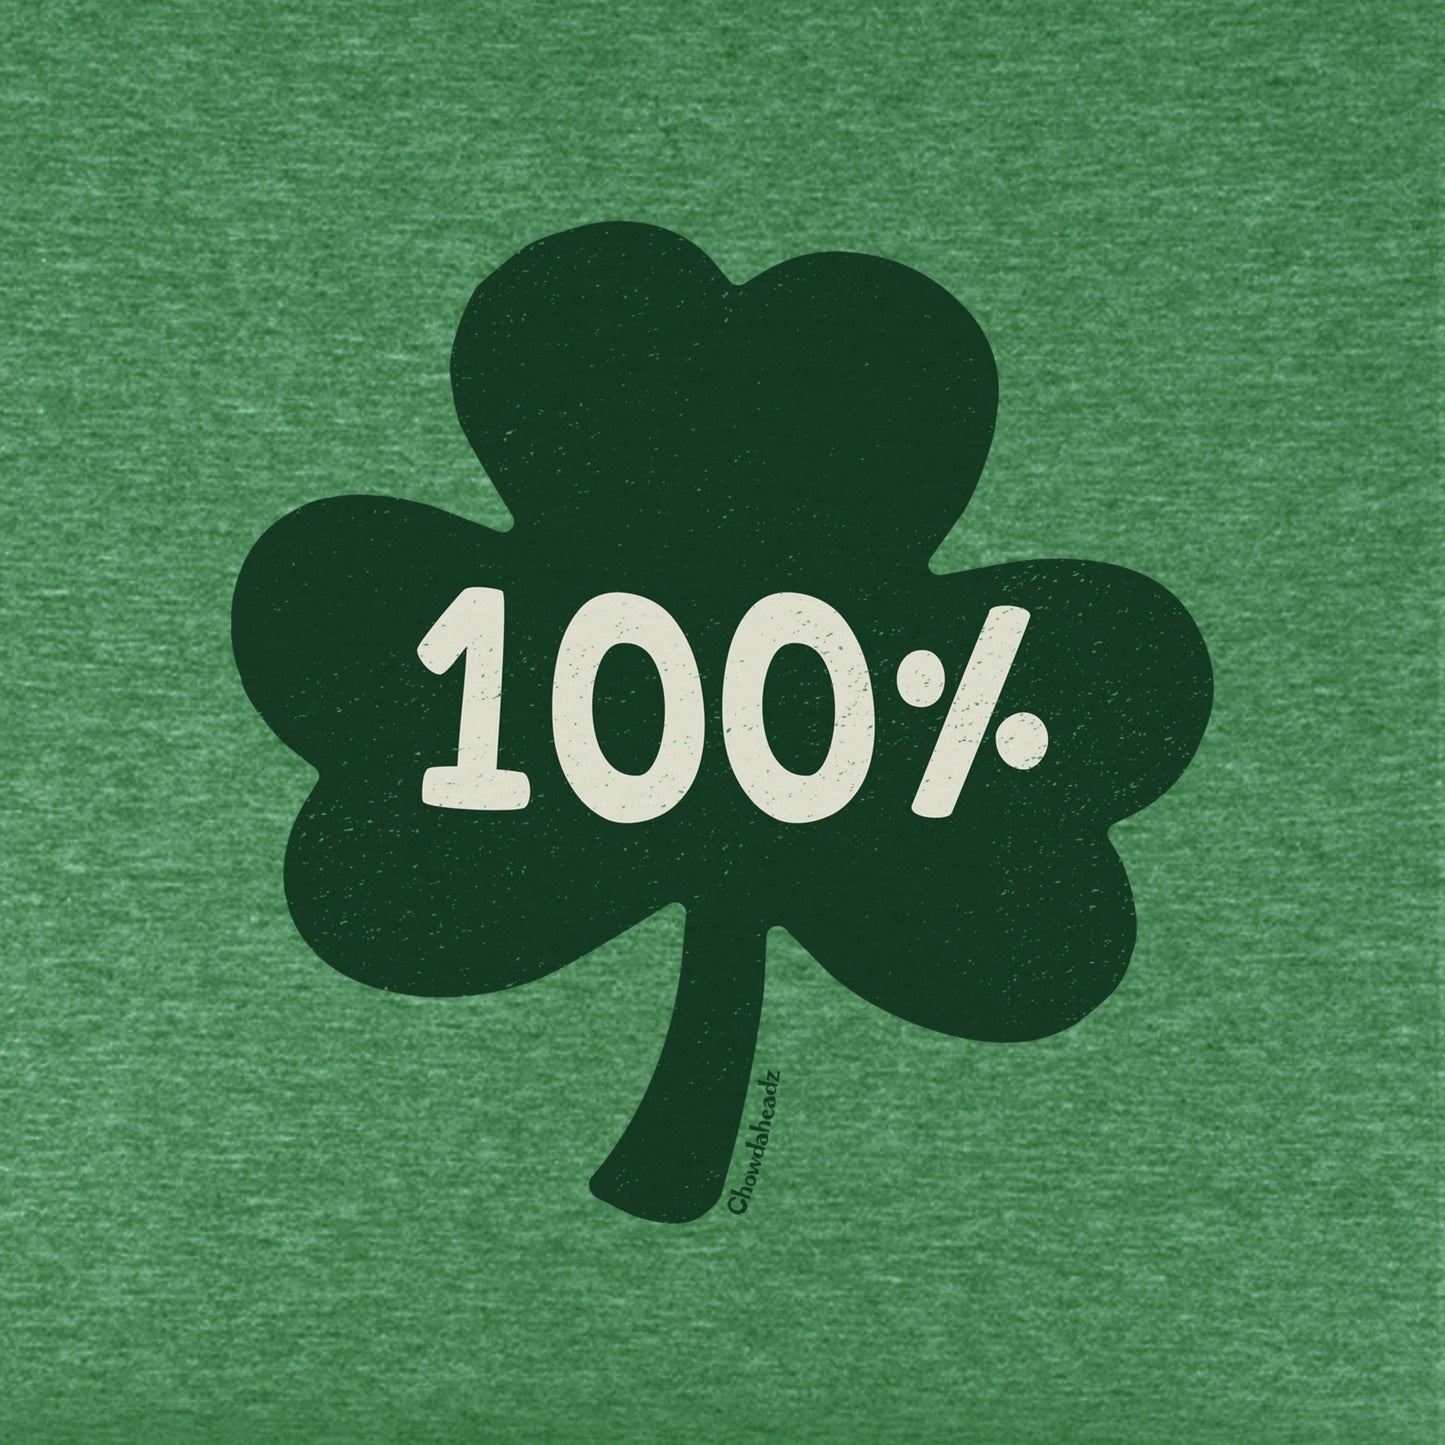 100% Irish Youth T-Shirt - Chowdaheadz